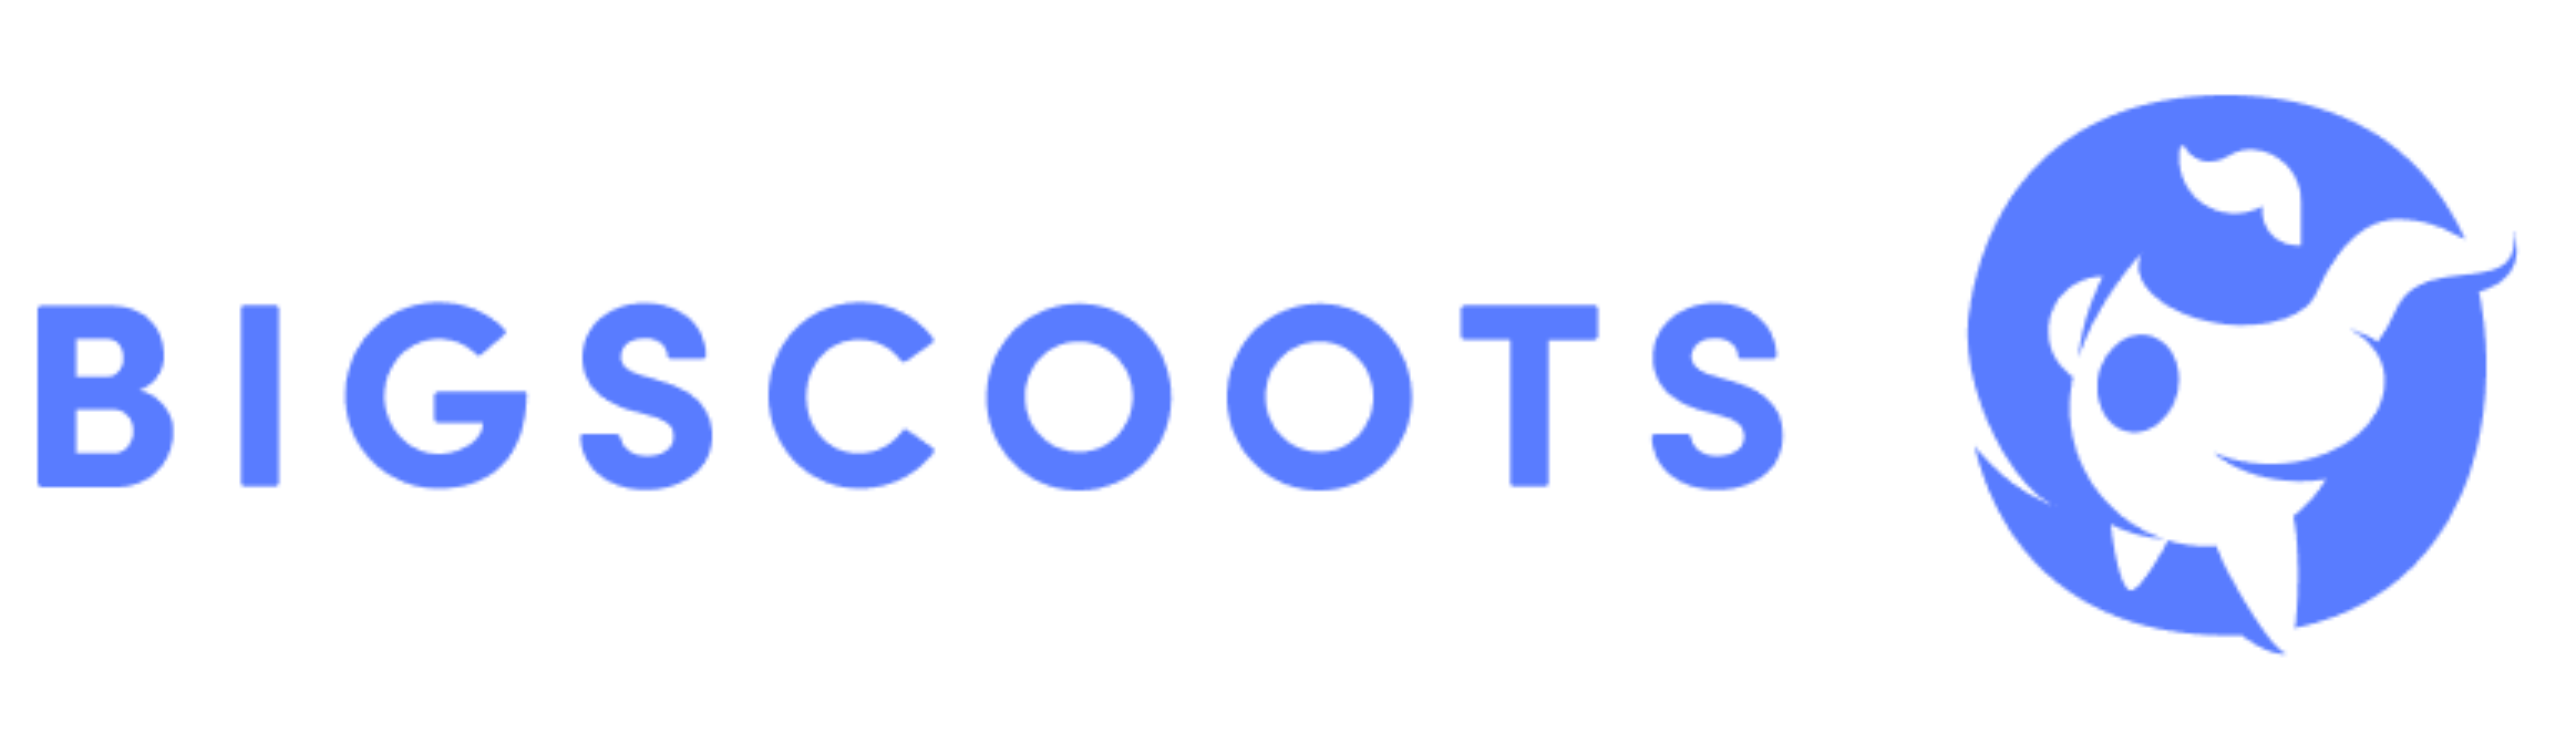 Bigscoots logo